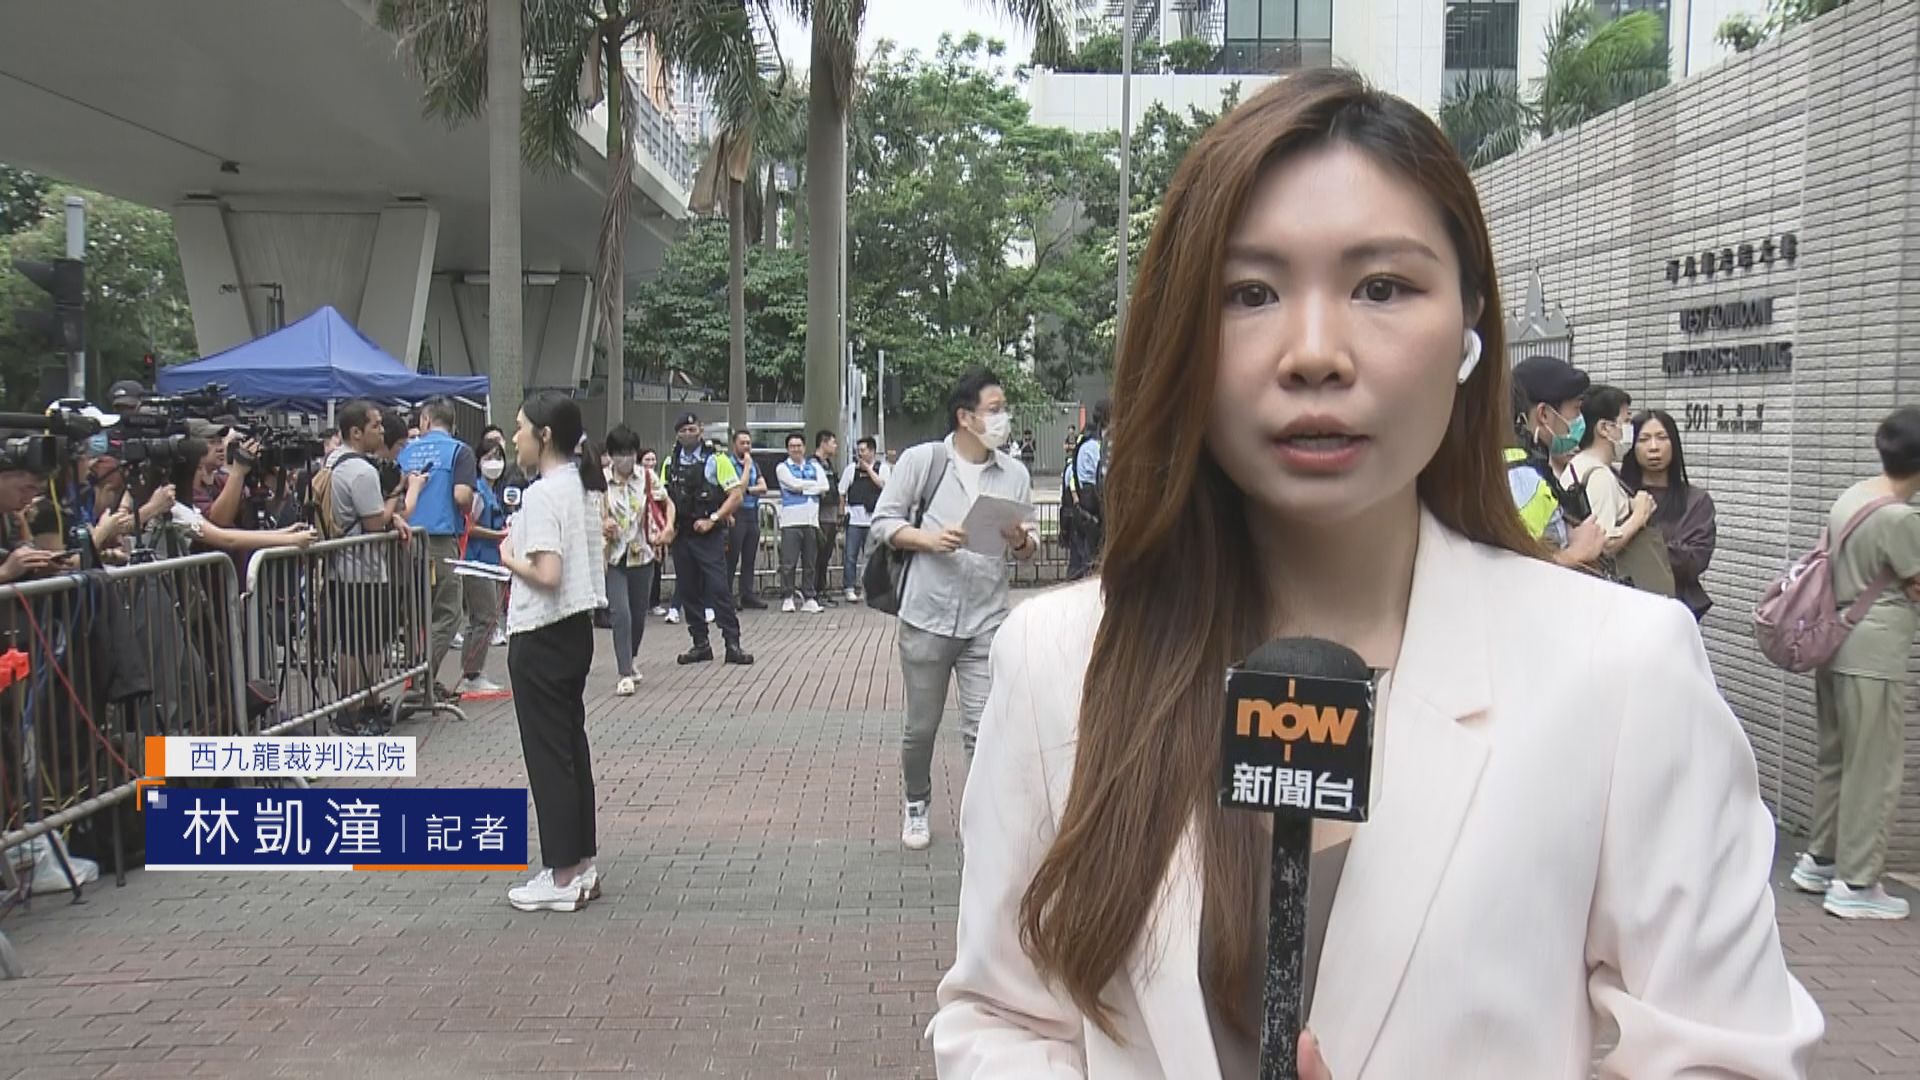 【記者直擊】民主派顛覆政權案將裁決 市民陸續進入西九龍法院旁聽